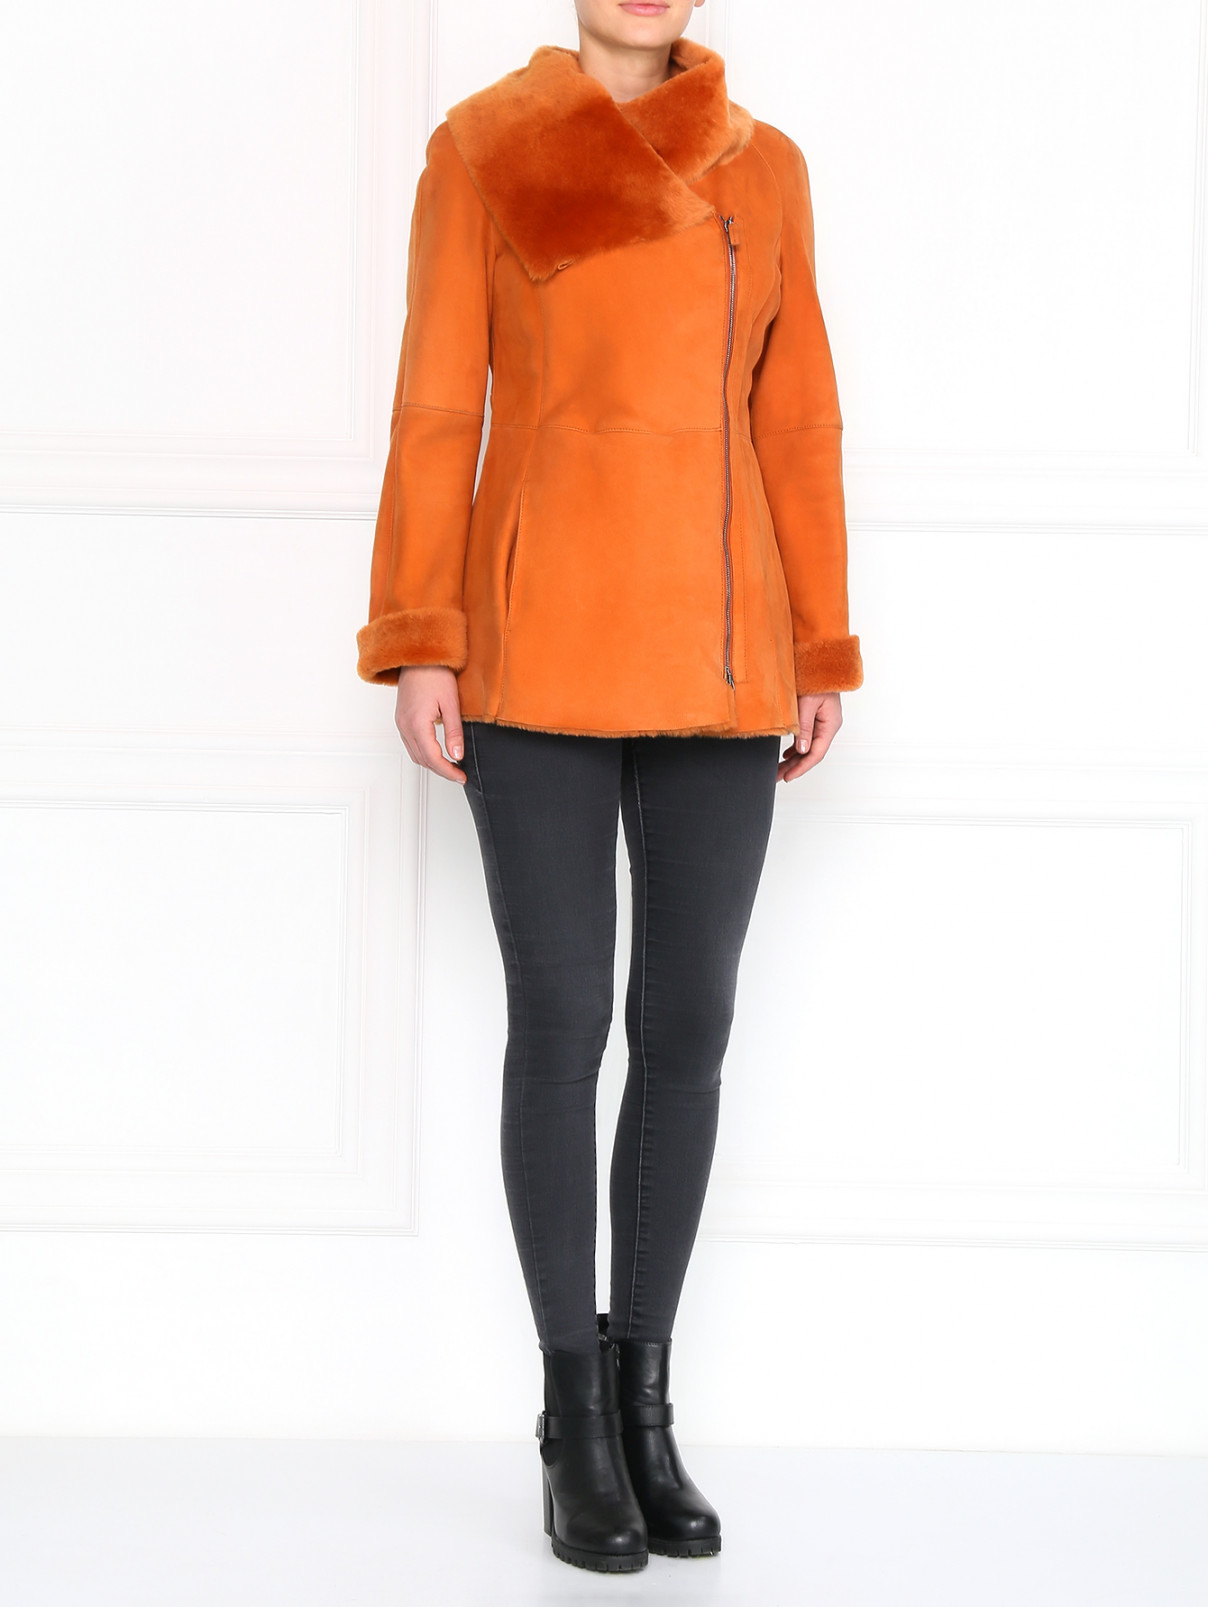 Дубленка на молнии с боковыми карманами Etro  –  Модель Общий вид  – Цвет:  Оранжевый